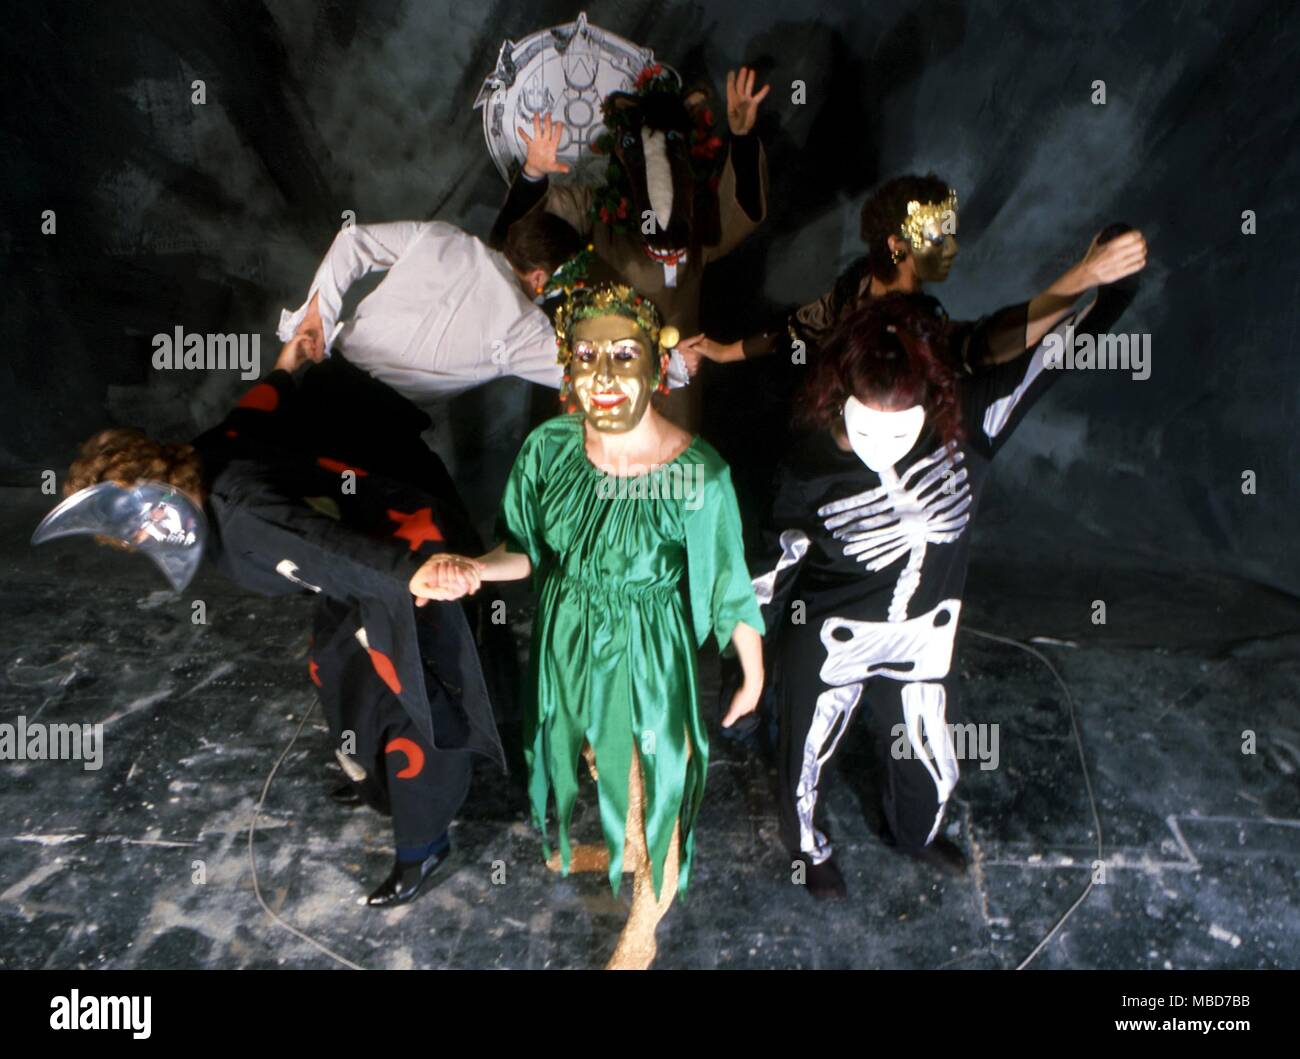 Gruppo di persone in una magia nera/stregoneria burlesque, vestito in costumi stravaganti e maschere, balli all'interno di un cerchio magico. Foto Stock